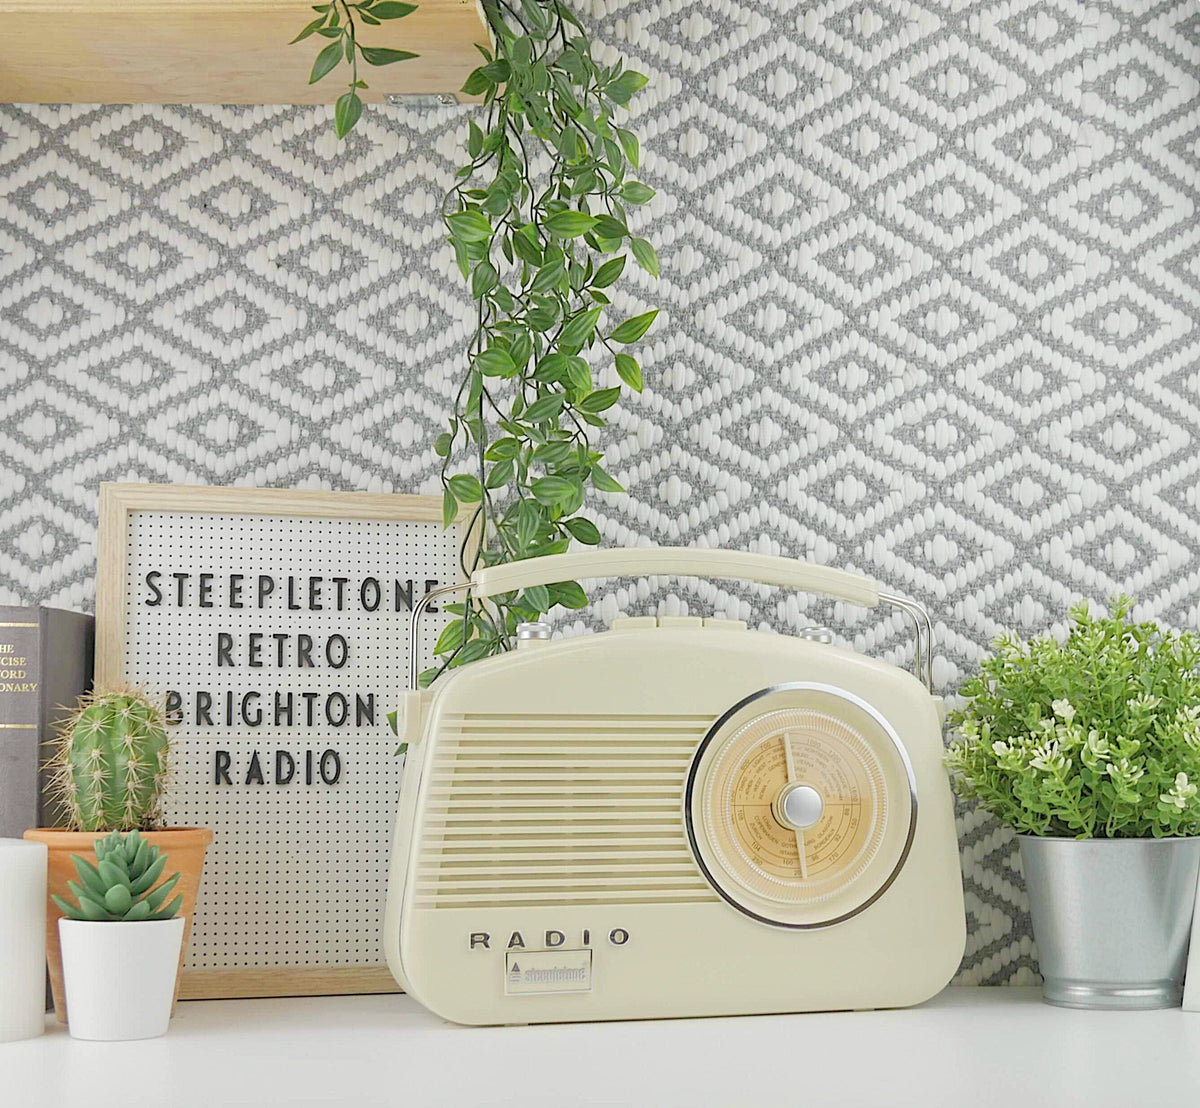 Steepletone Brighton Radio Vintage Style Shabby Chic Retro Radio